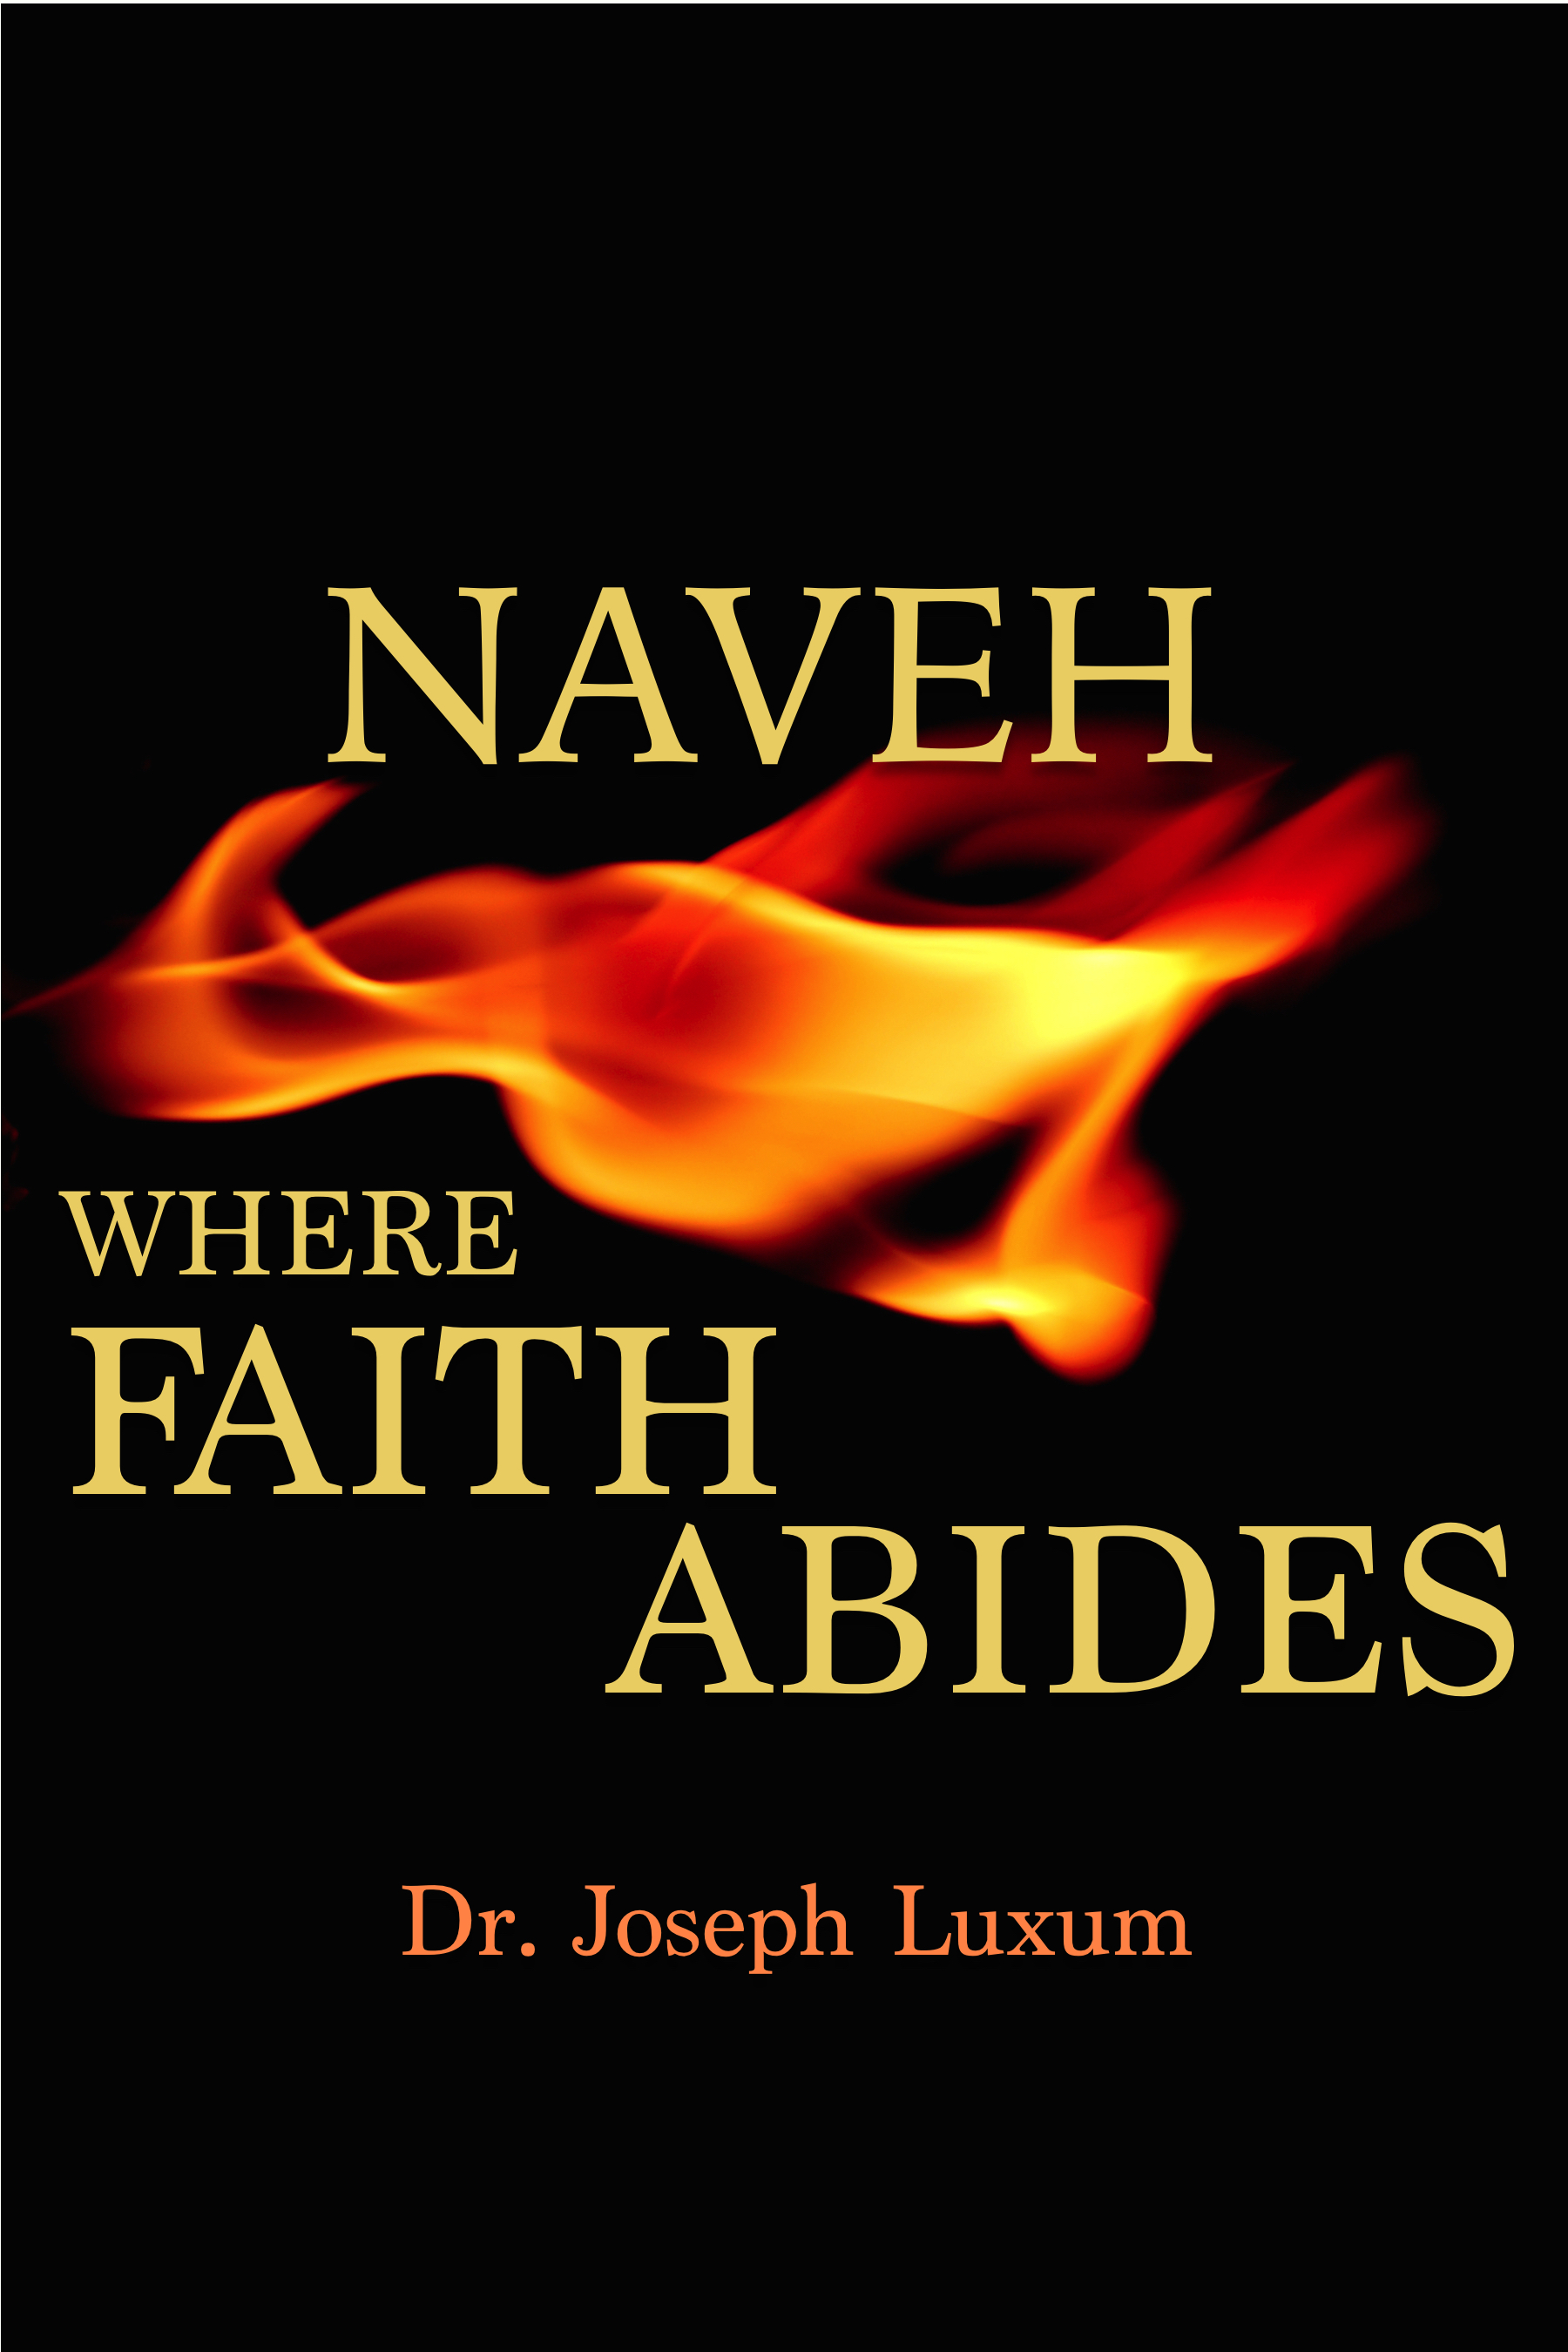 Naveh where faith abides